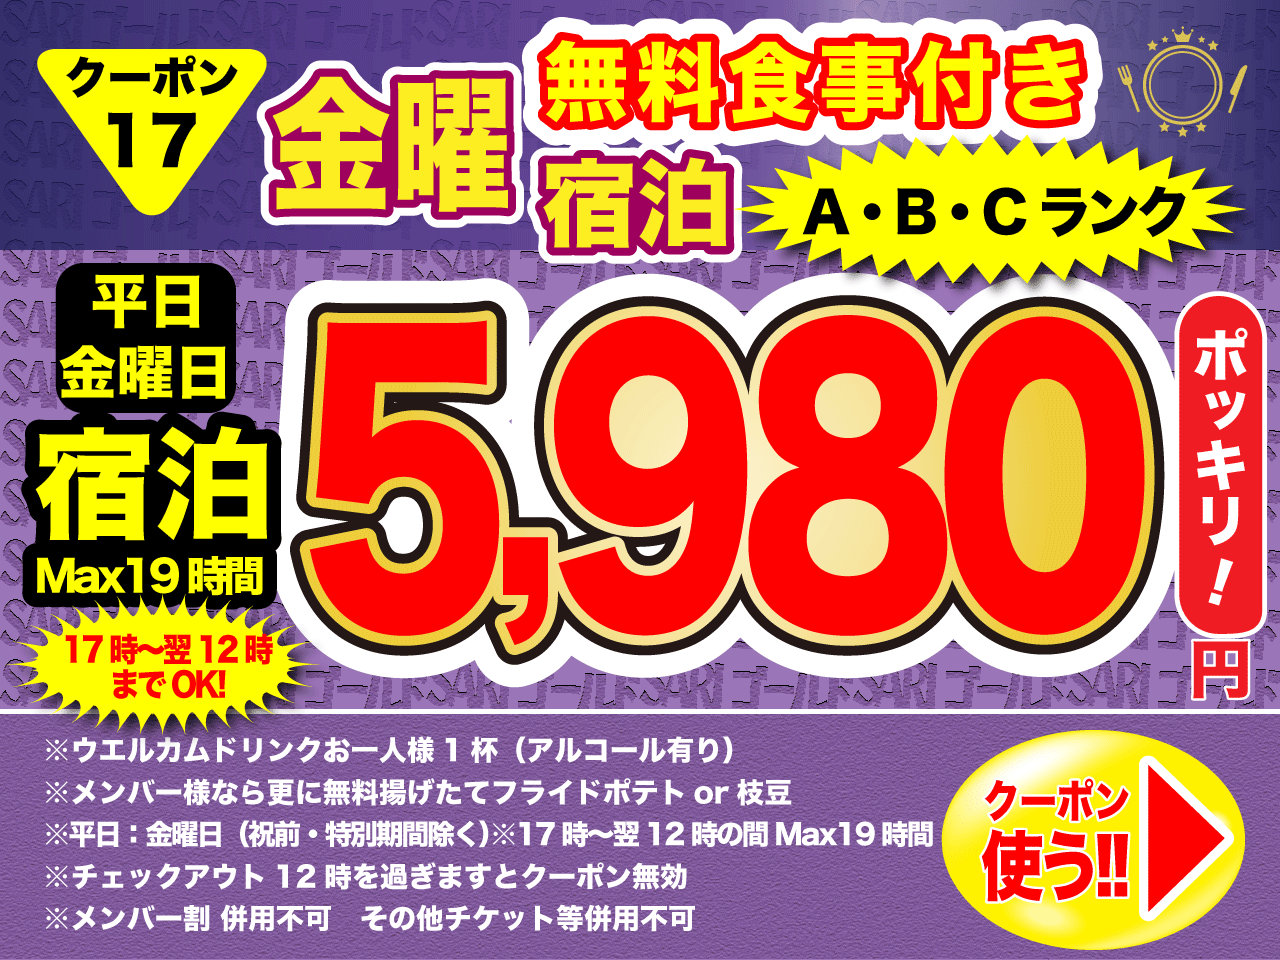 A・B・Cランク金曜宿泊5,980円